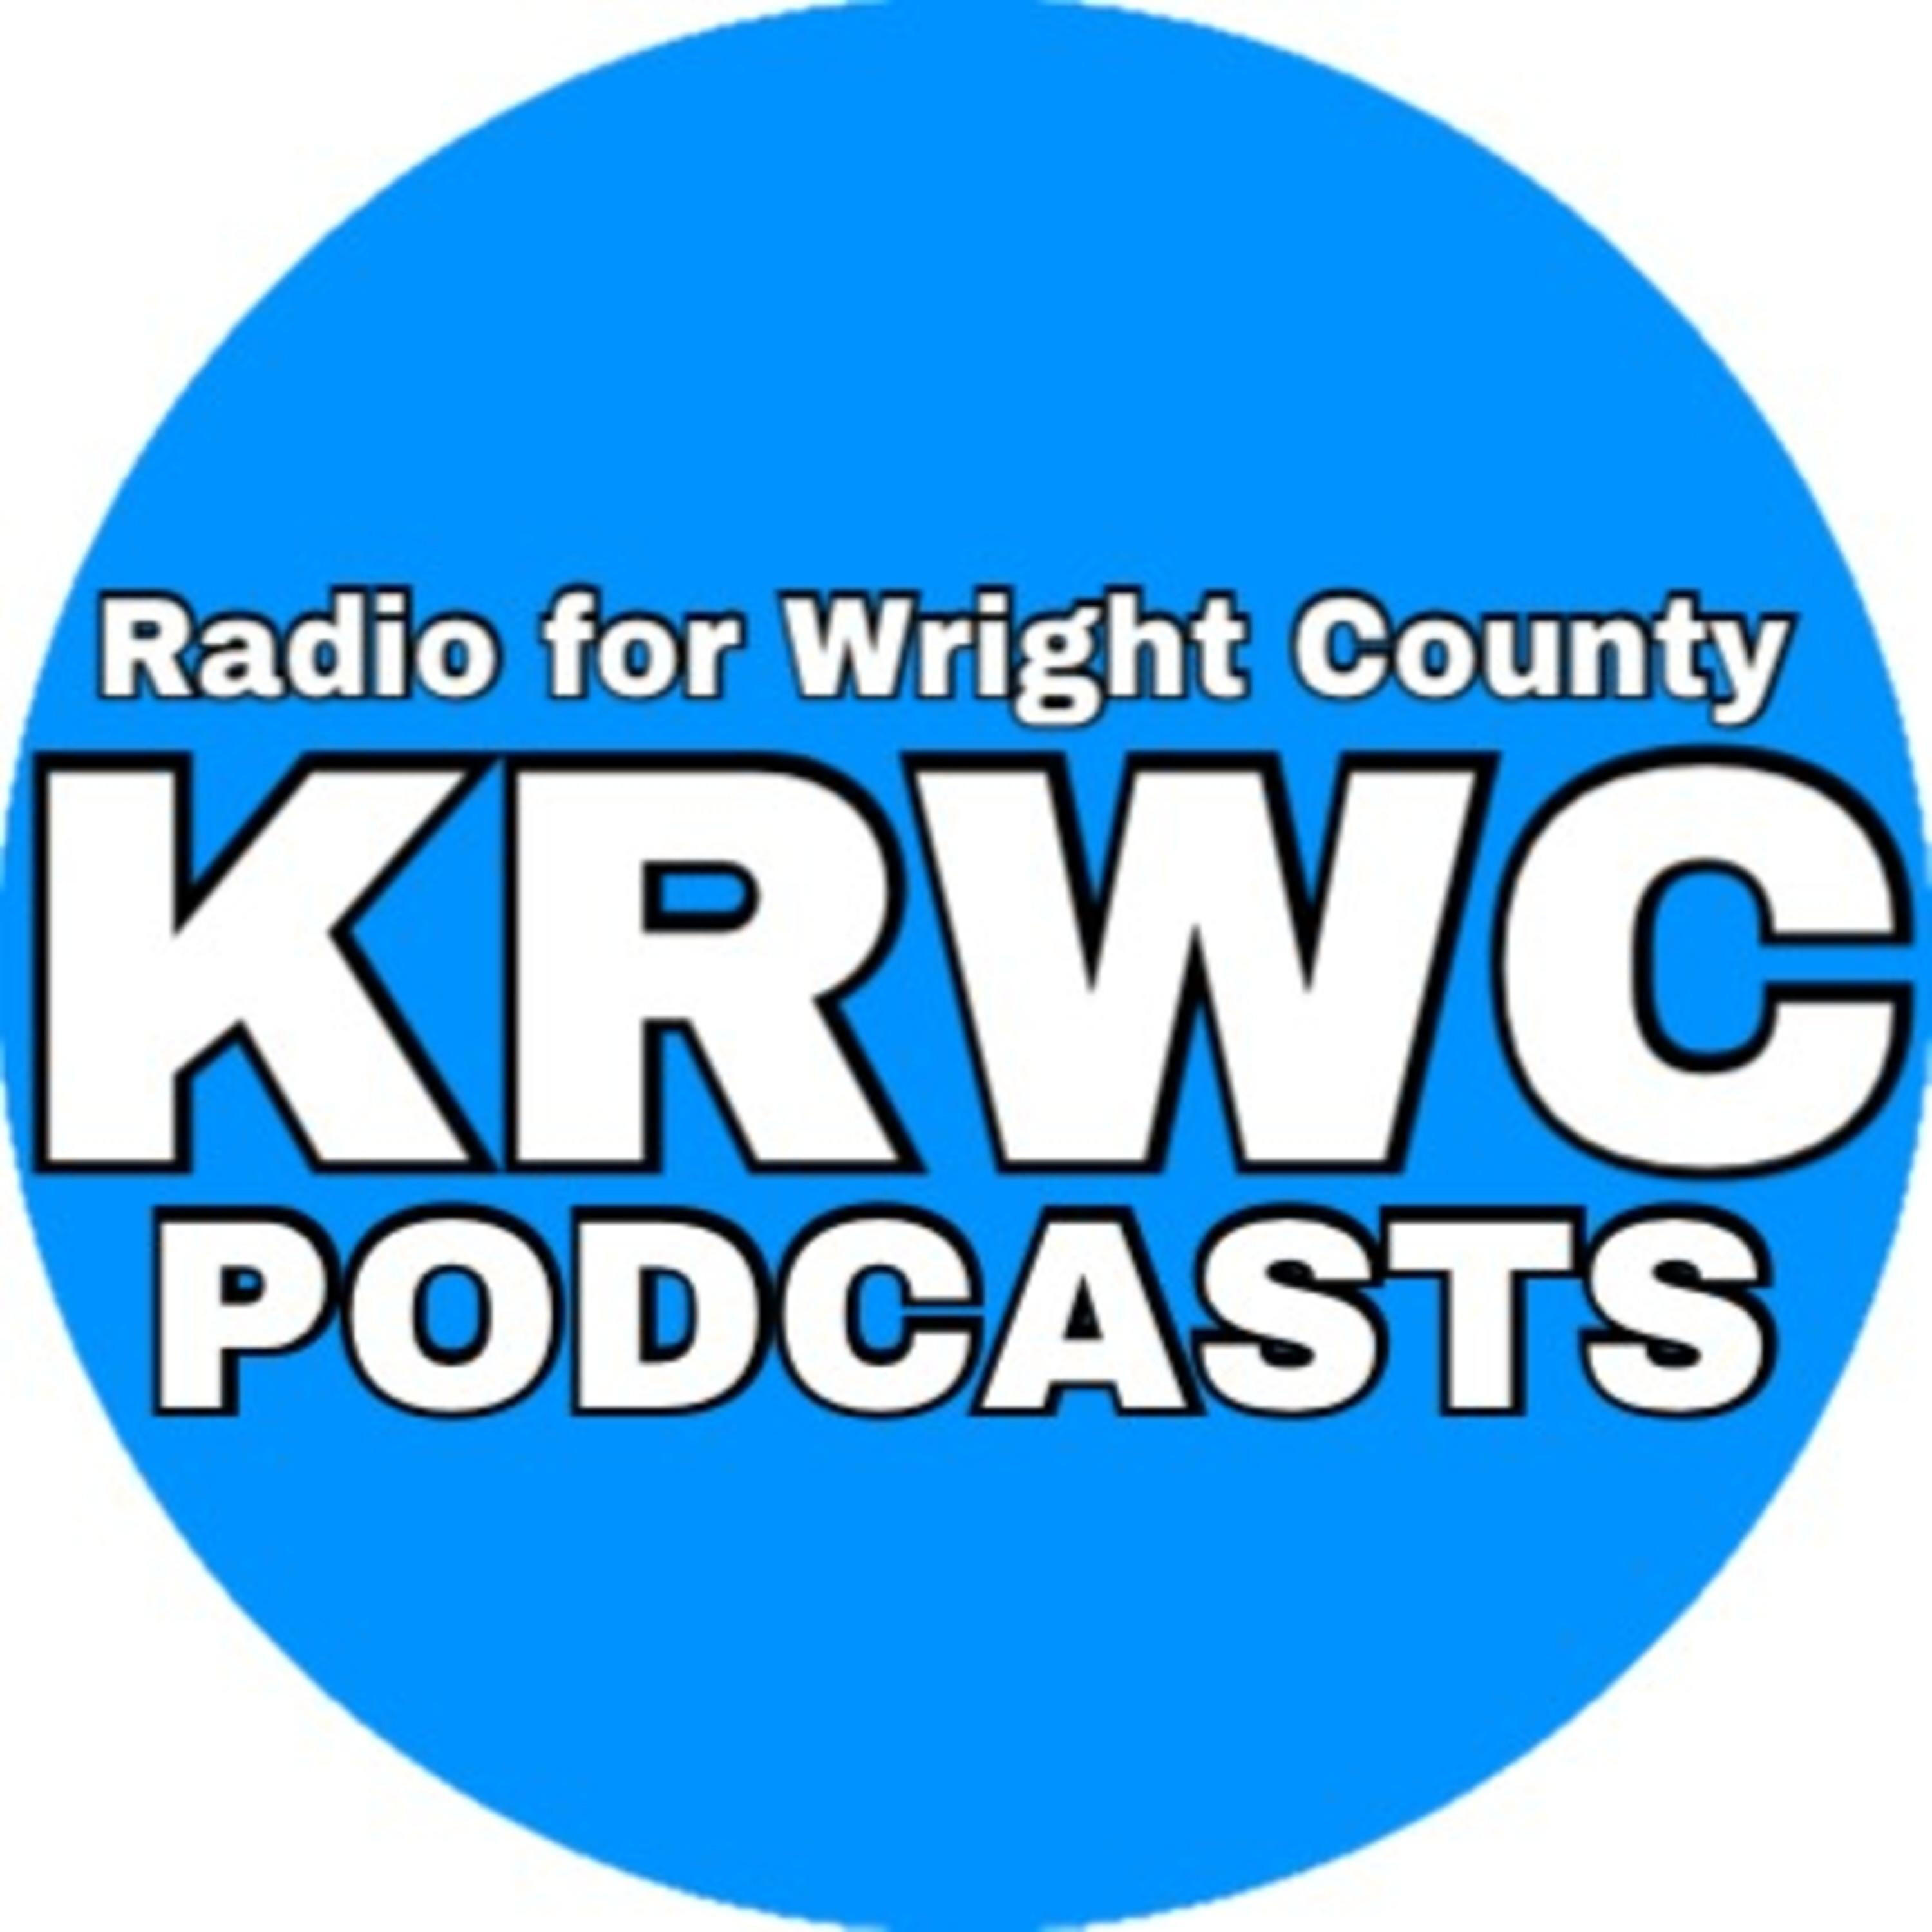 KRWC Radio 1360 AM | iHeart